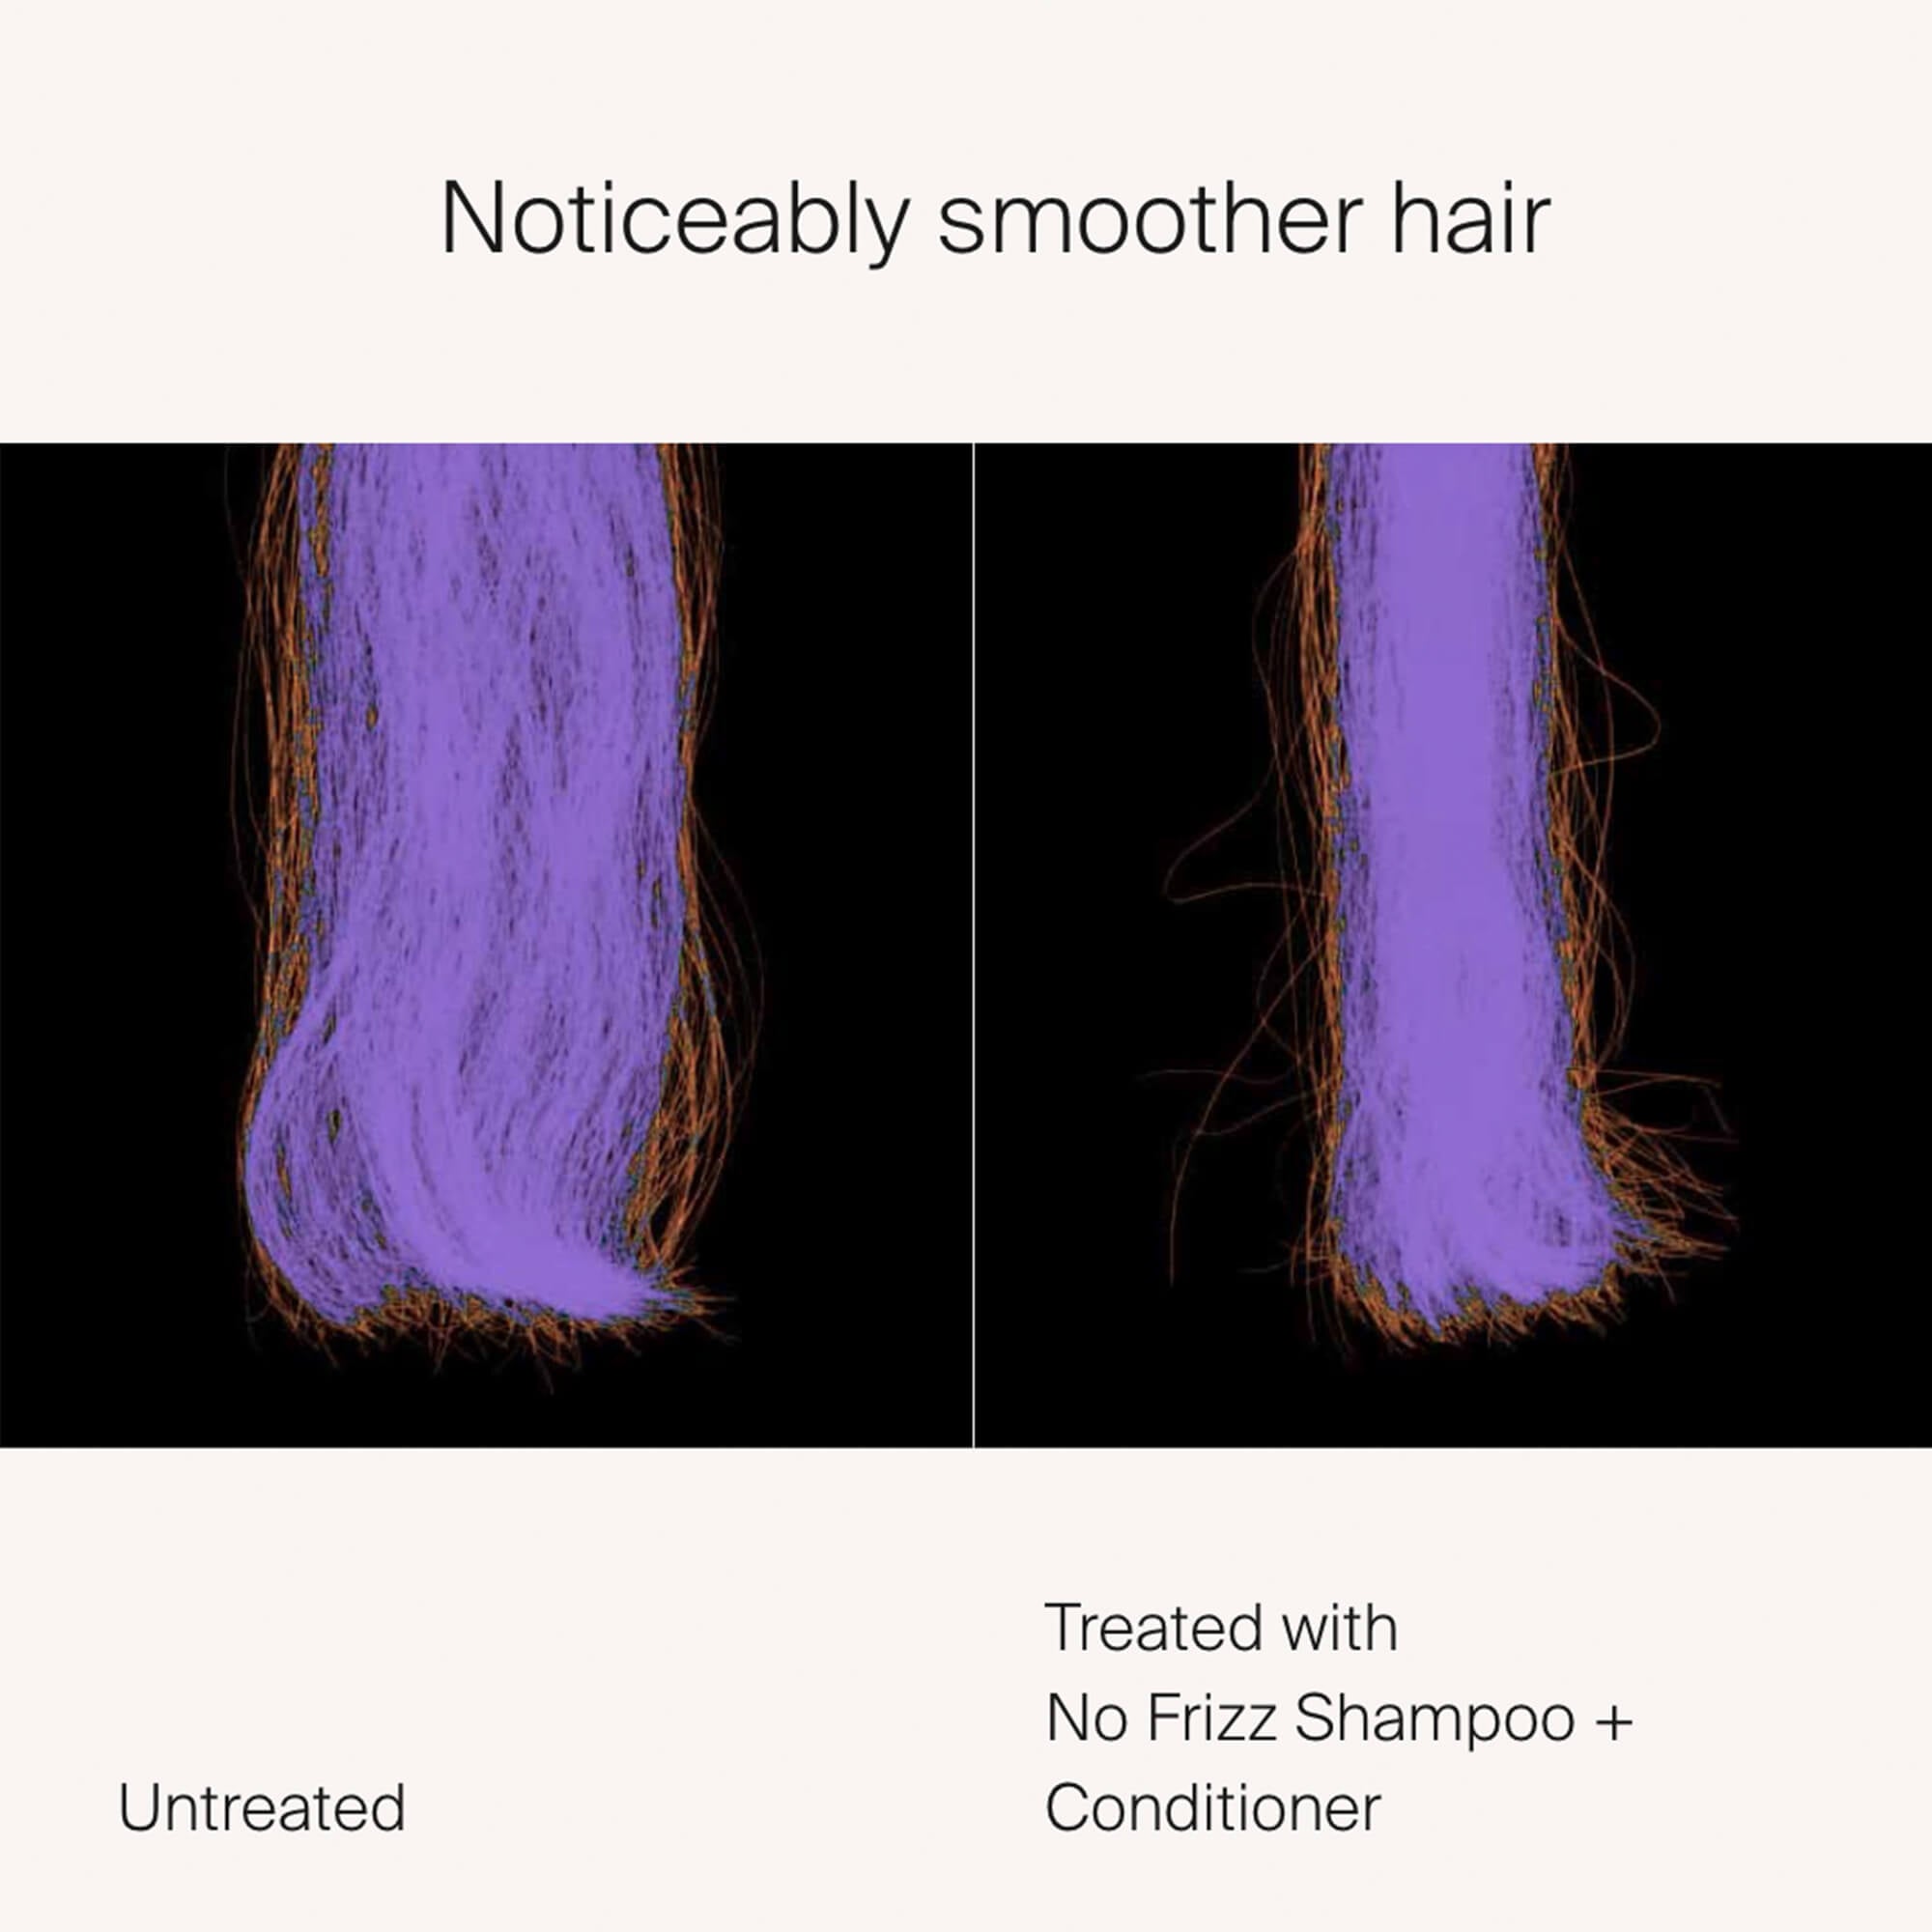 No Frizz Shampoo